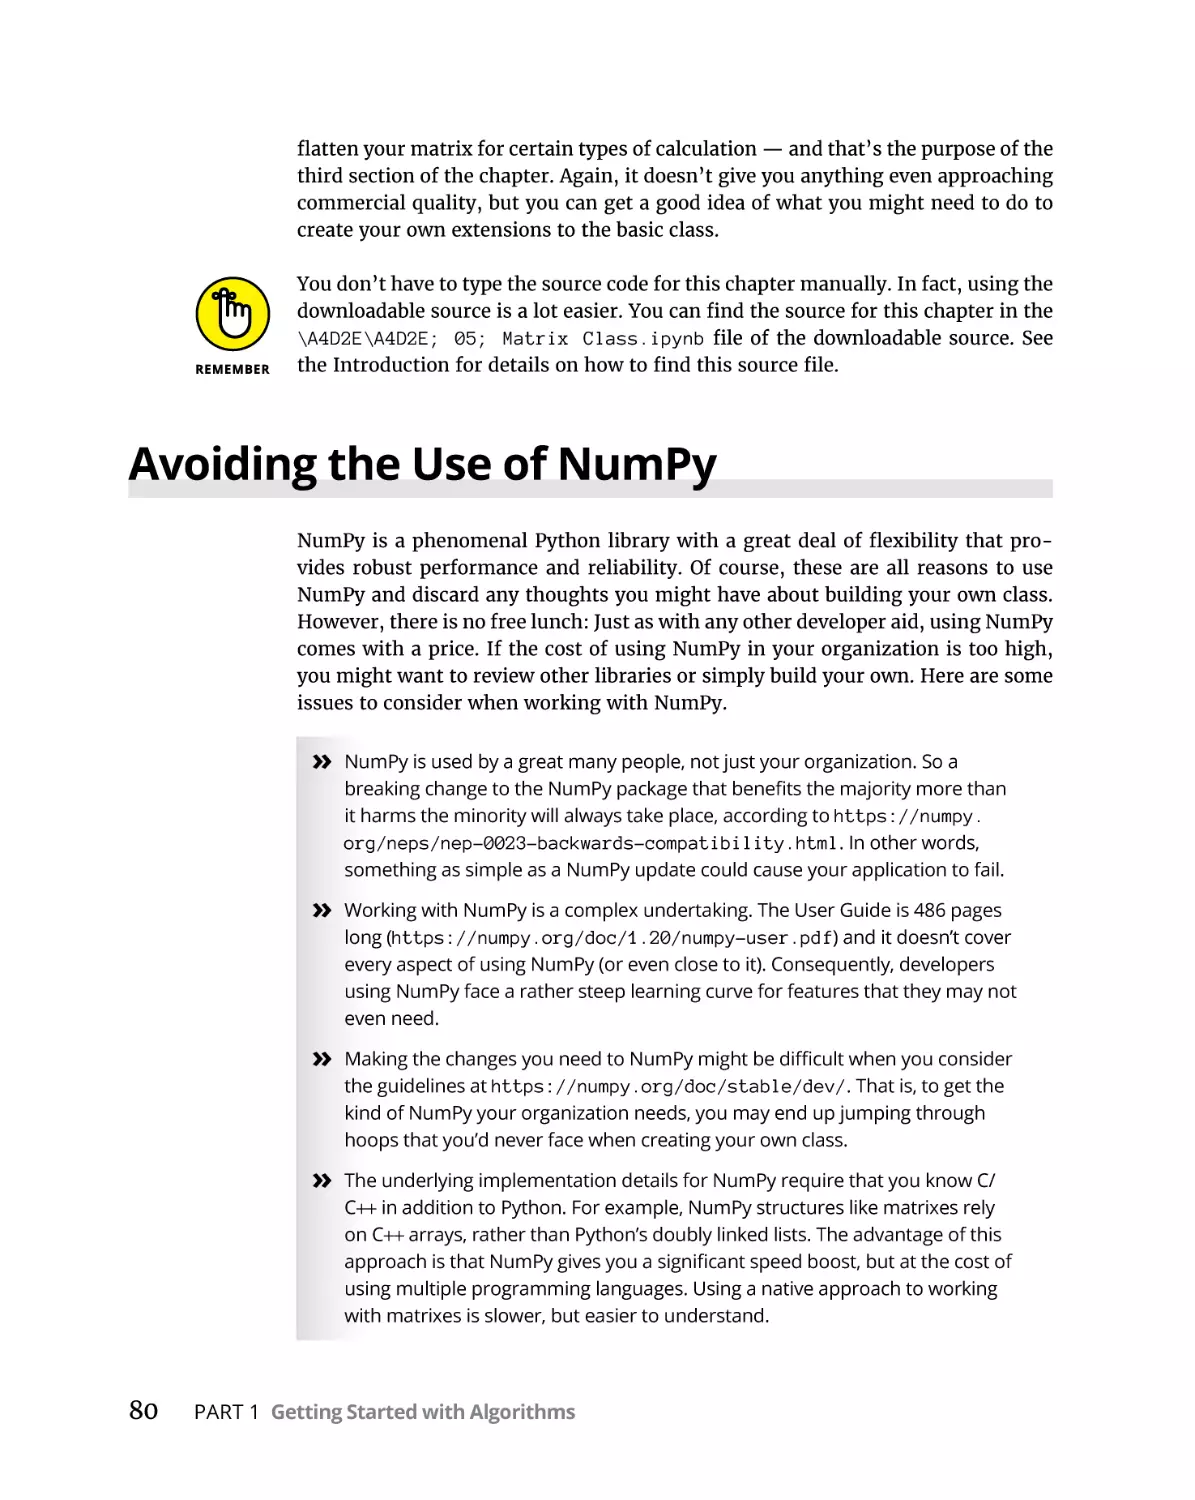 Avoiding the Use of NumPy